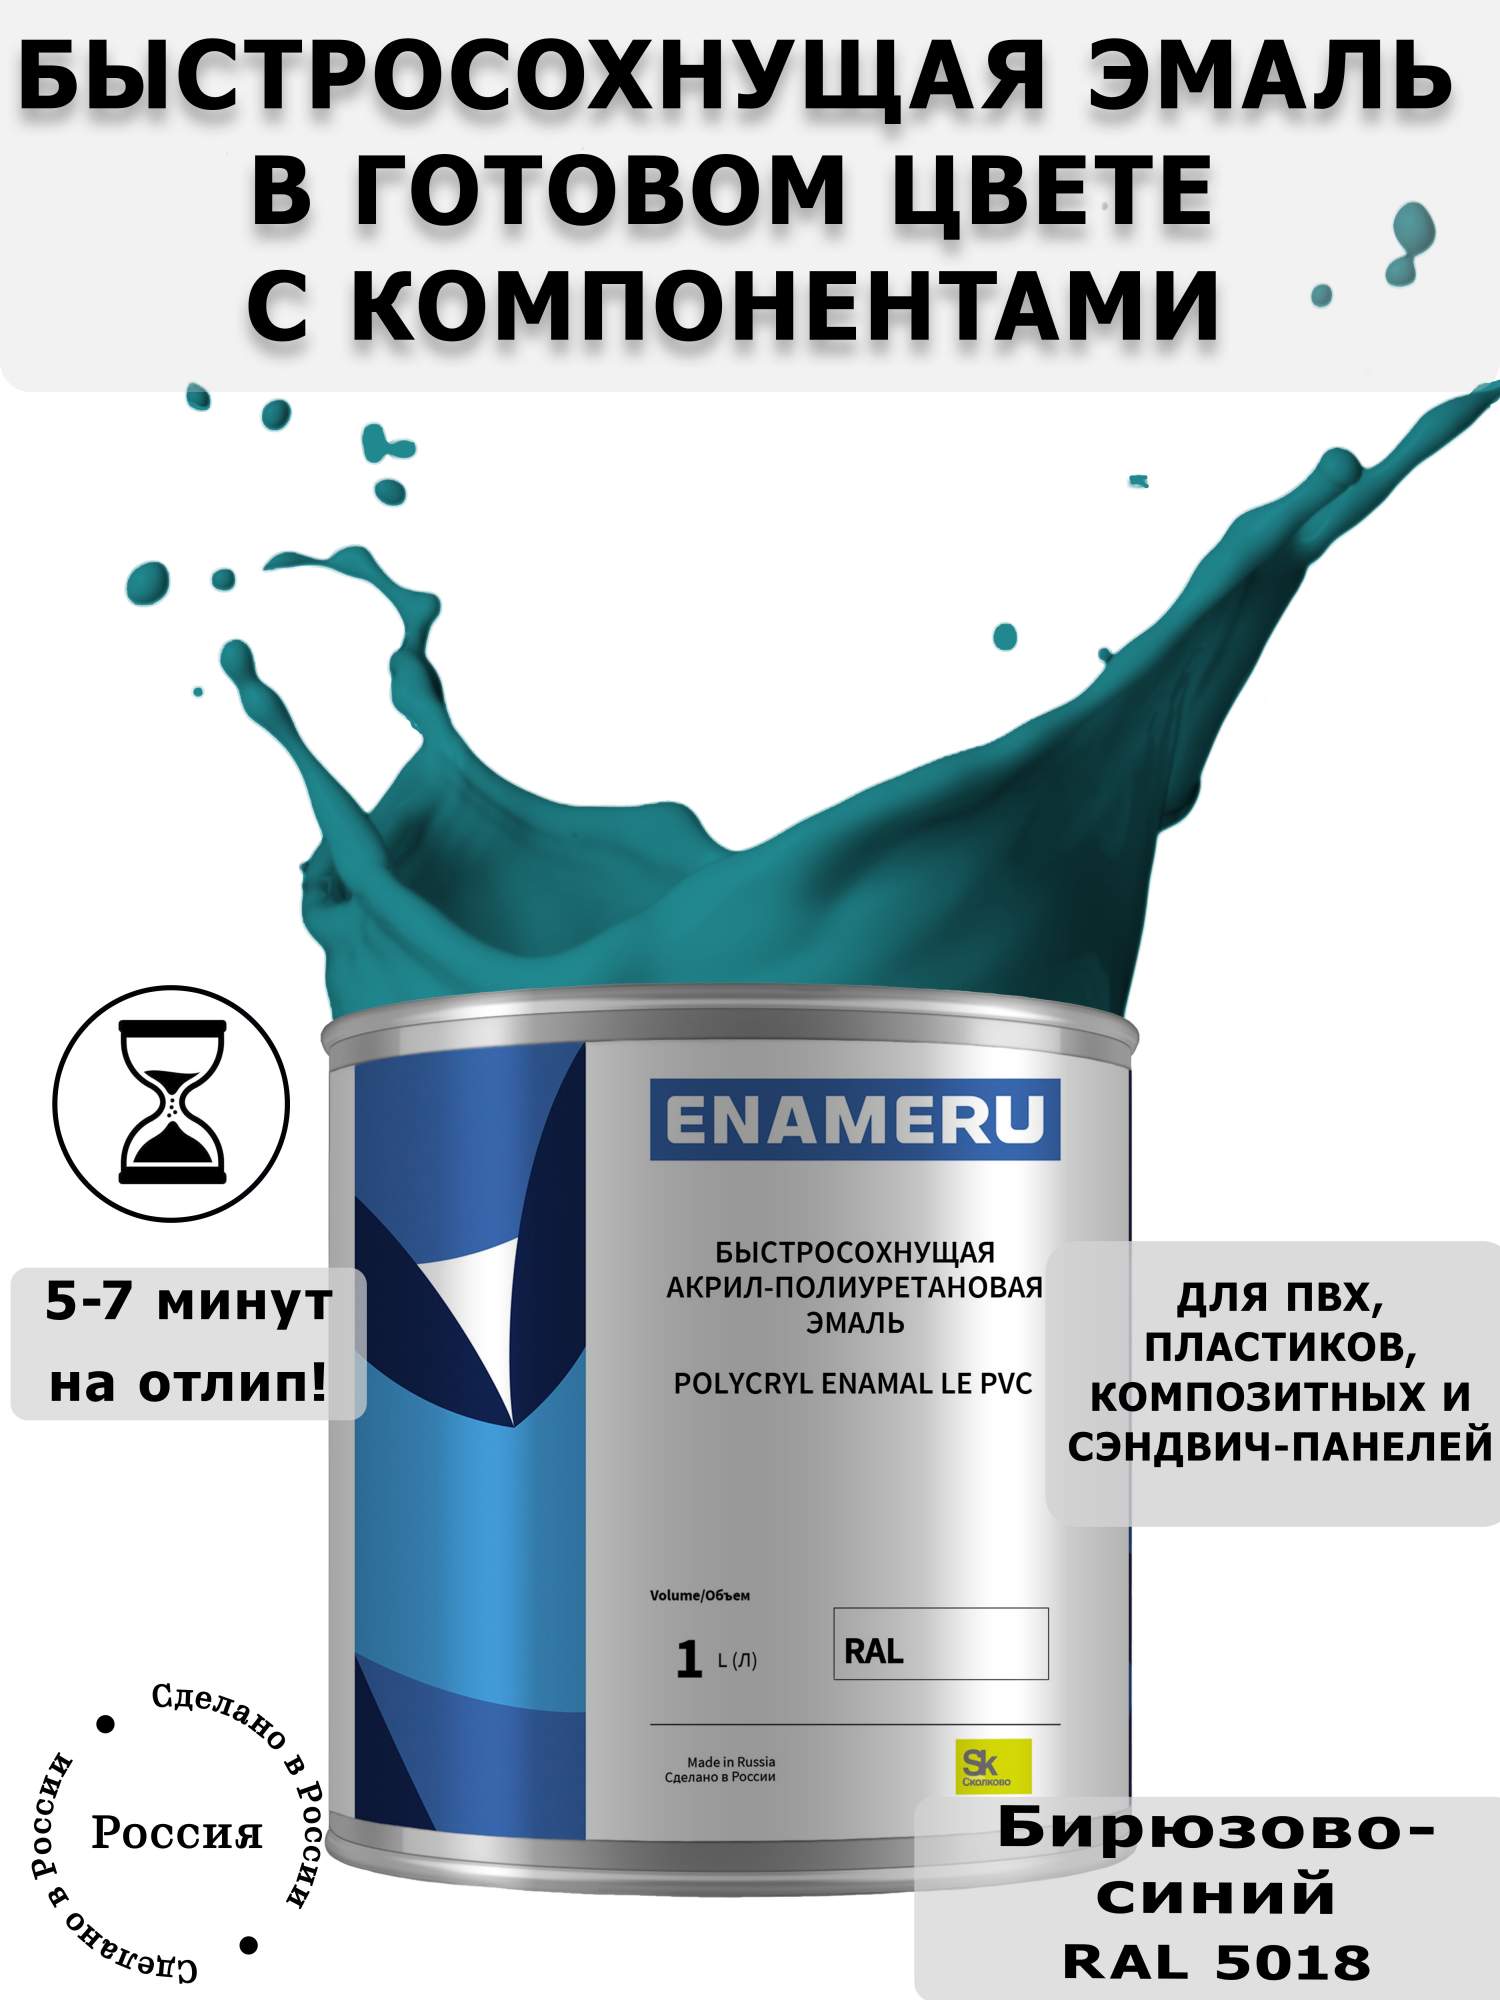 Эмаль Enameru для ПВХ, Пластика с компонентами, Акрил-полиуретановая, 1л, RAL 5018 кпб элис бирюзово синий р 1 5 сп